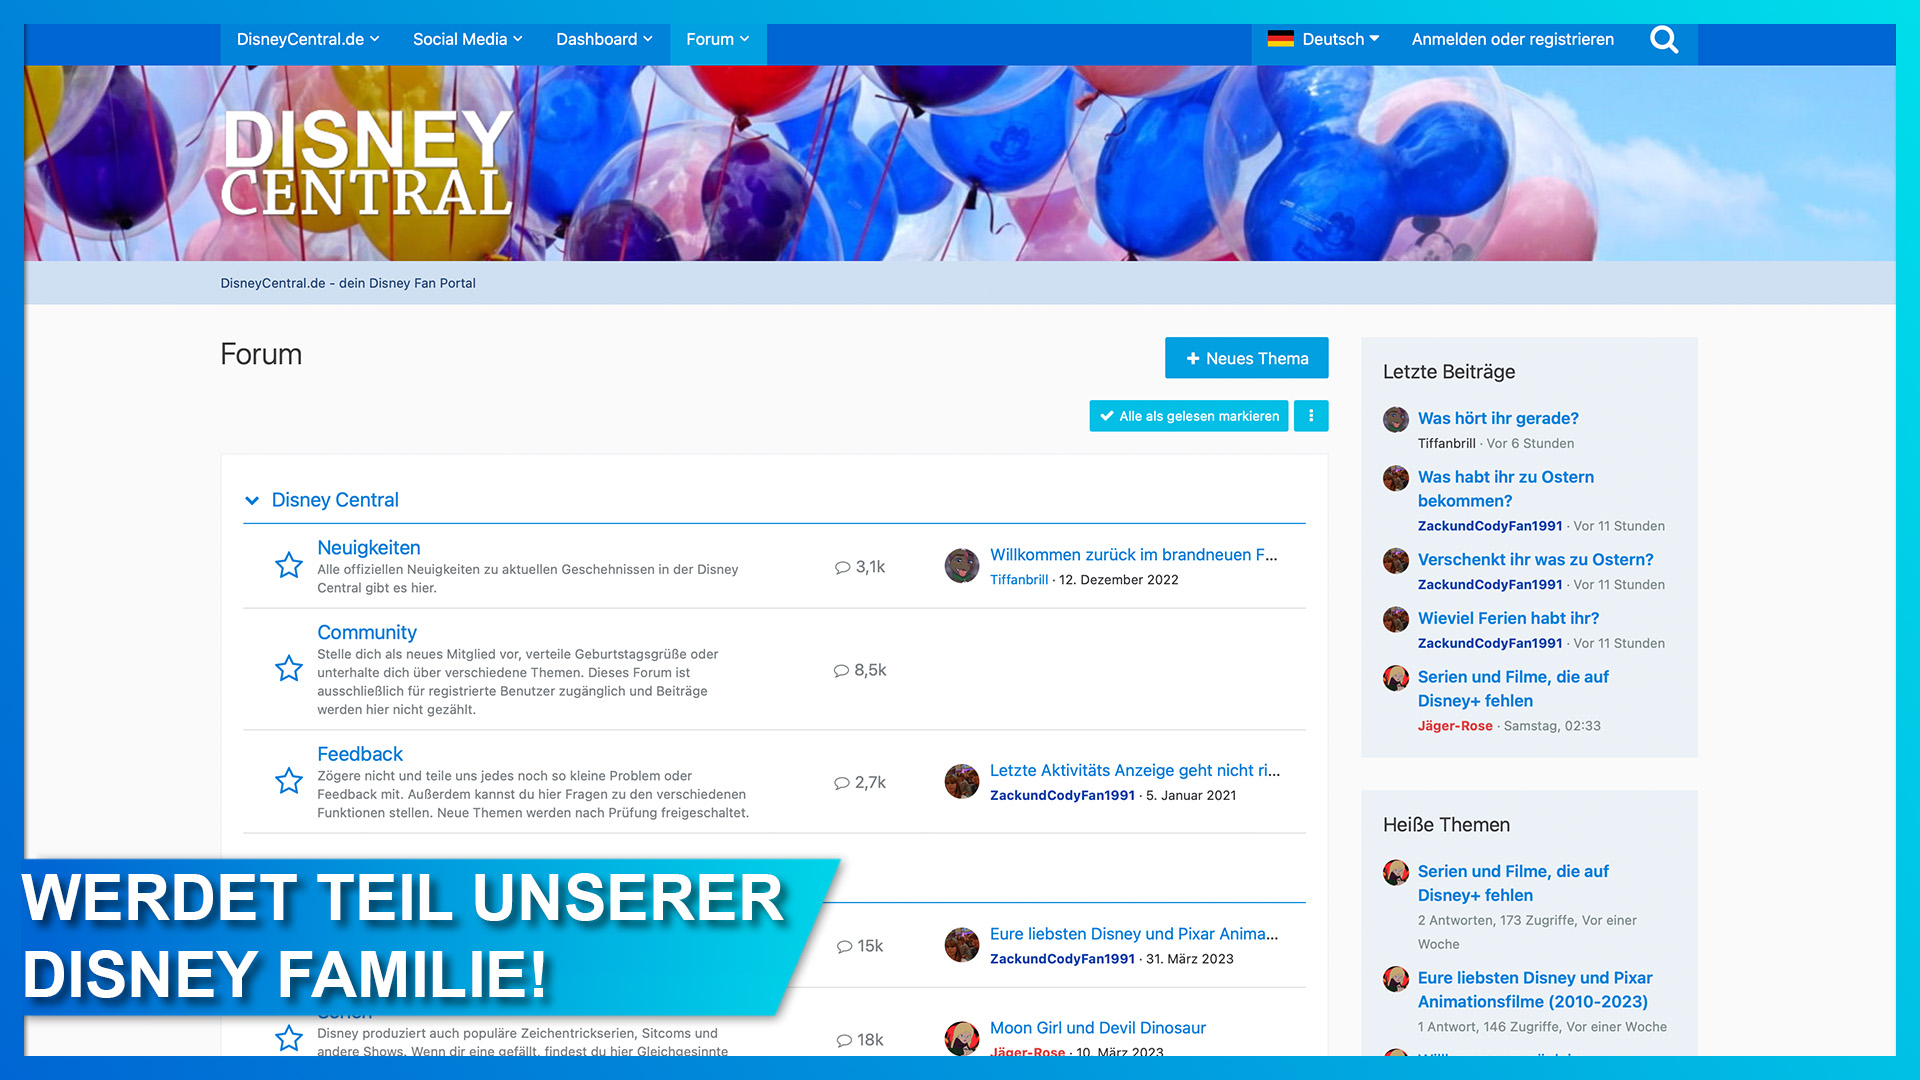 Das DisneyCentral.de Forum ist die Community für alle Disney, Pixar, Marvel und Star Wars Fans in Deutschland